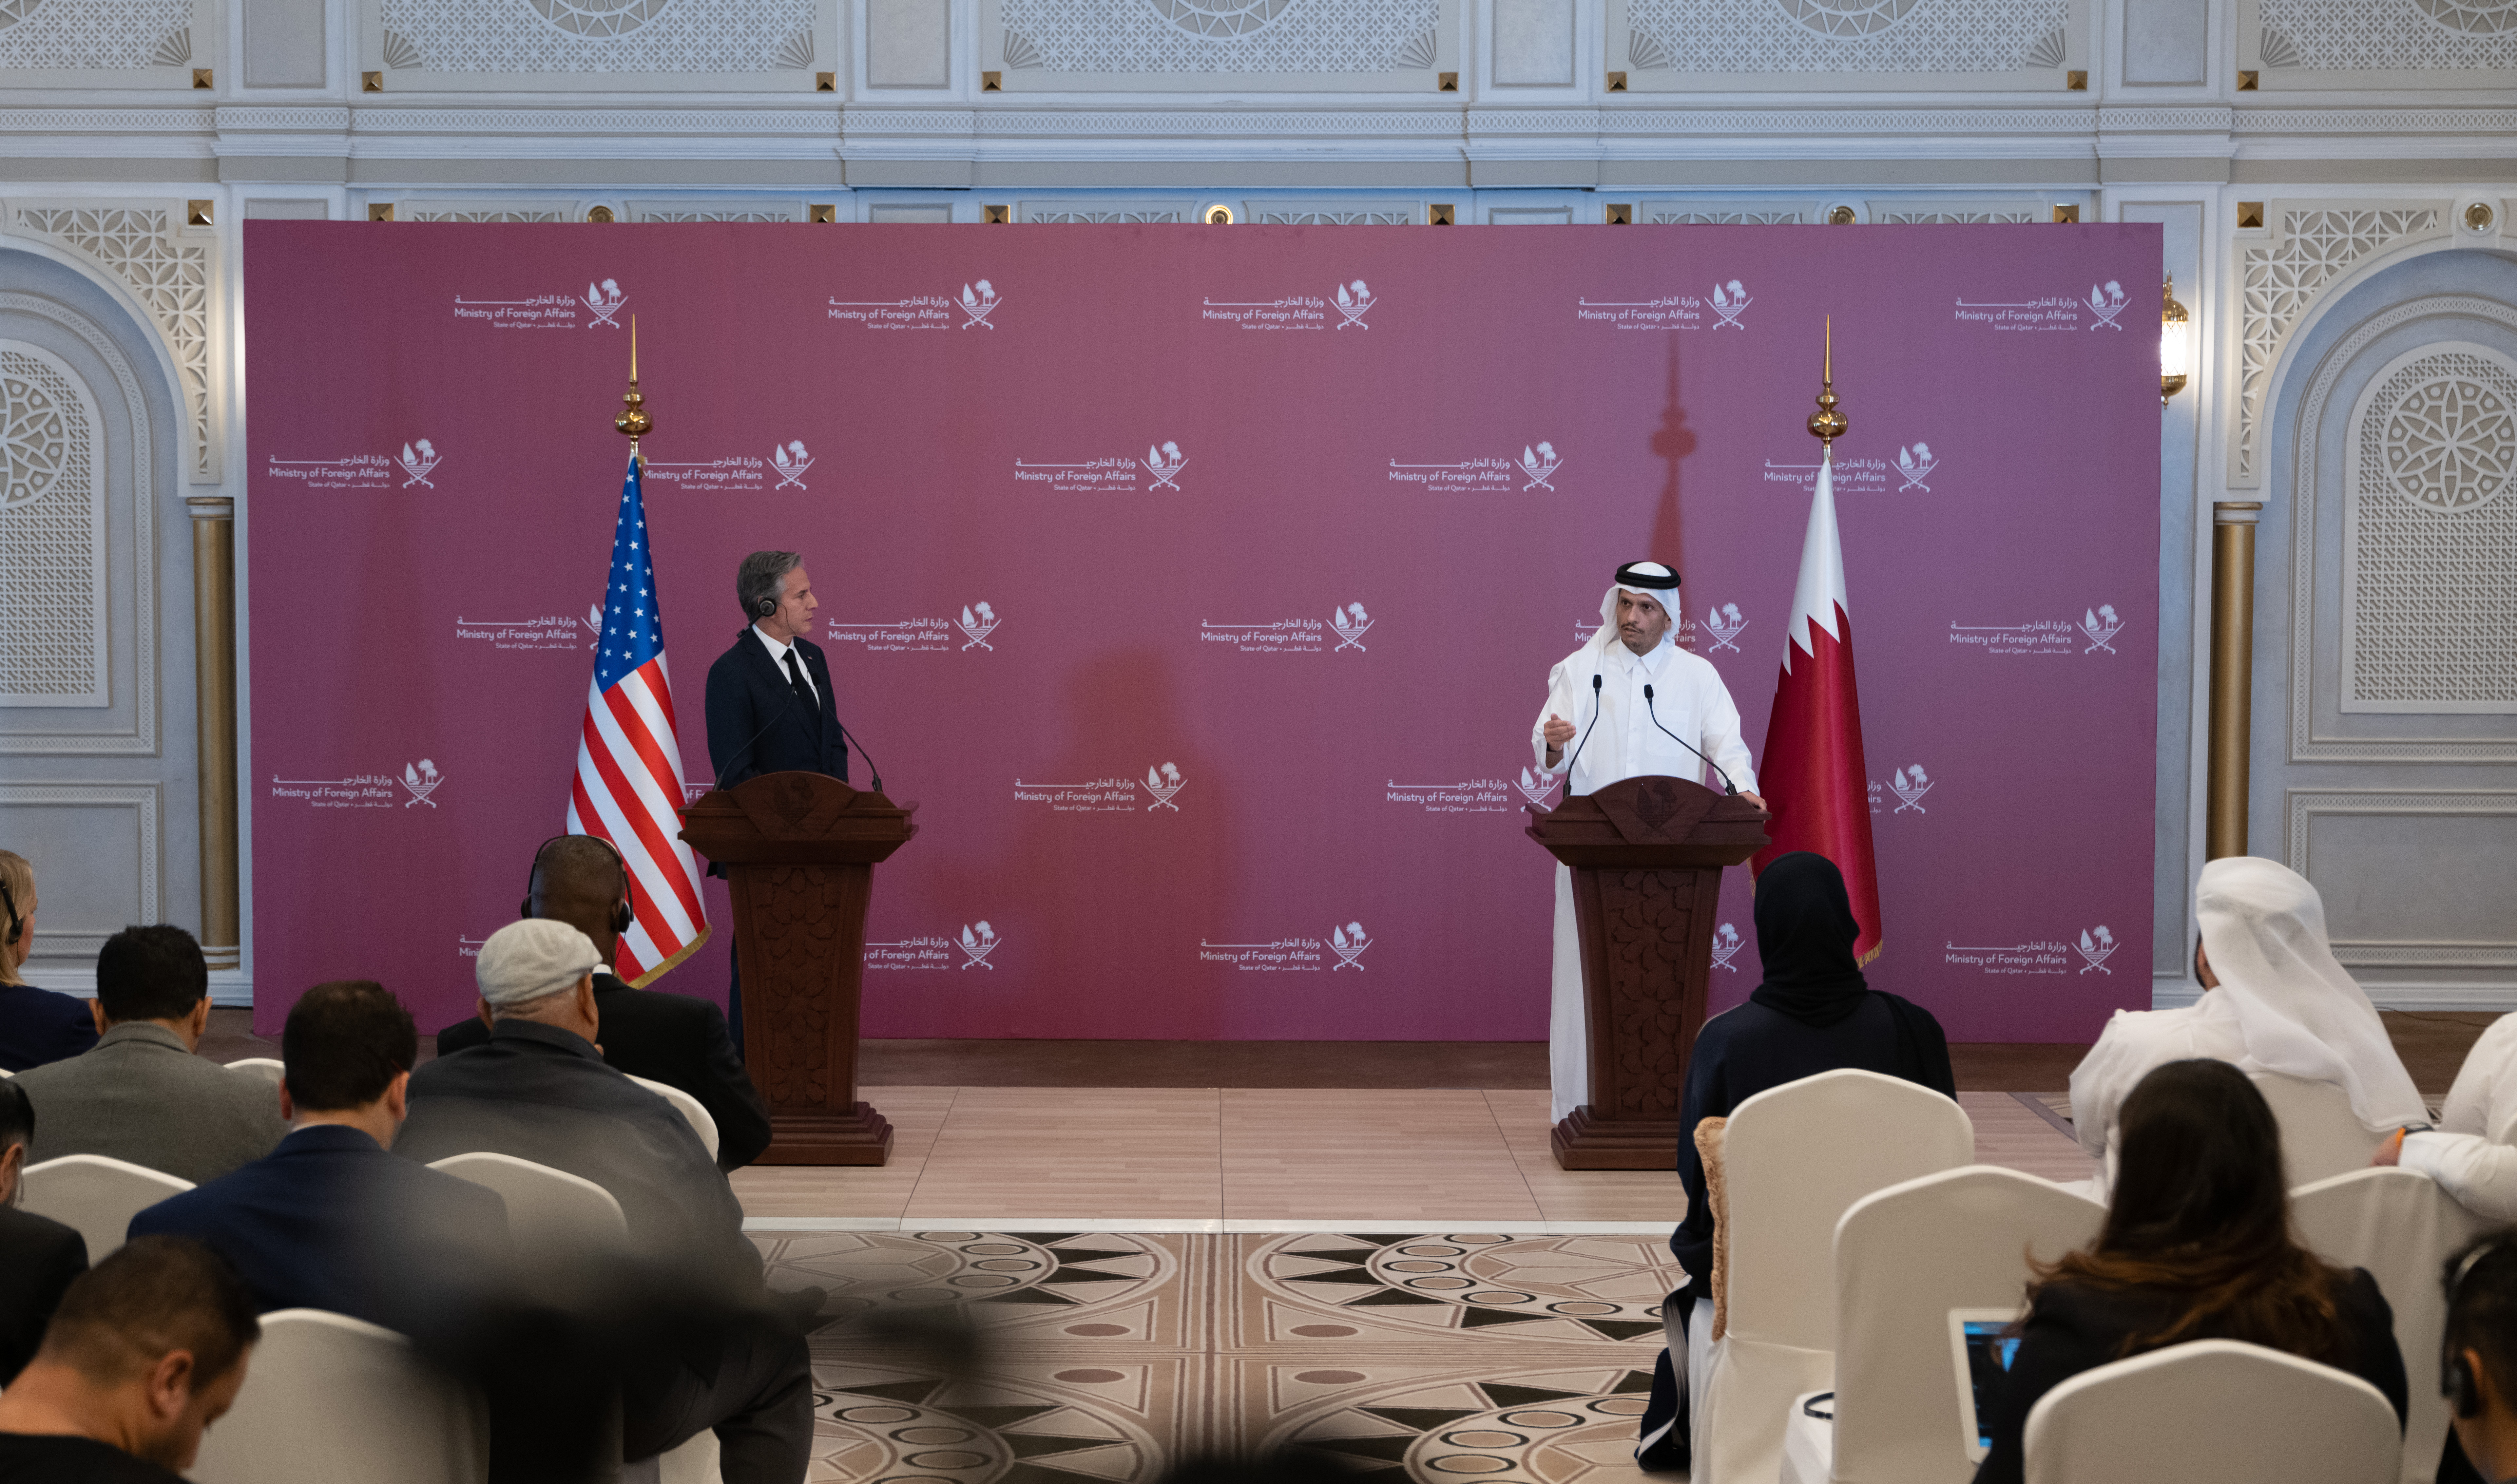 نائب رئيس مجلس الوزراء وزير الخارجية: قطر تعتبر العلاقات مع الولايات المتحدة من أهم الشراكات الاستراتيجية لديها